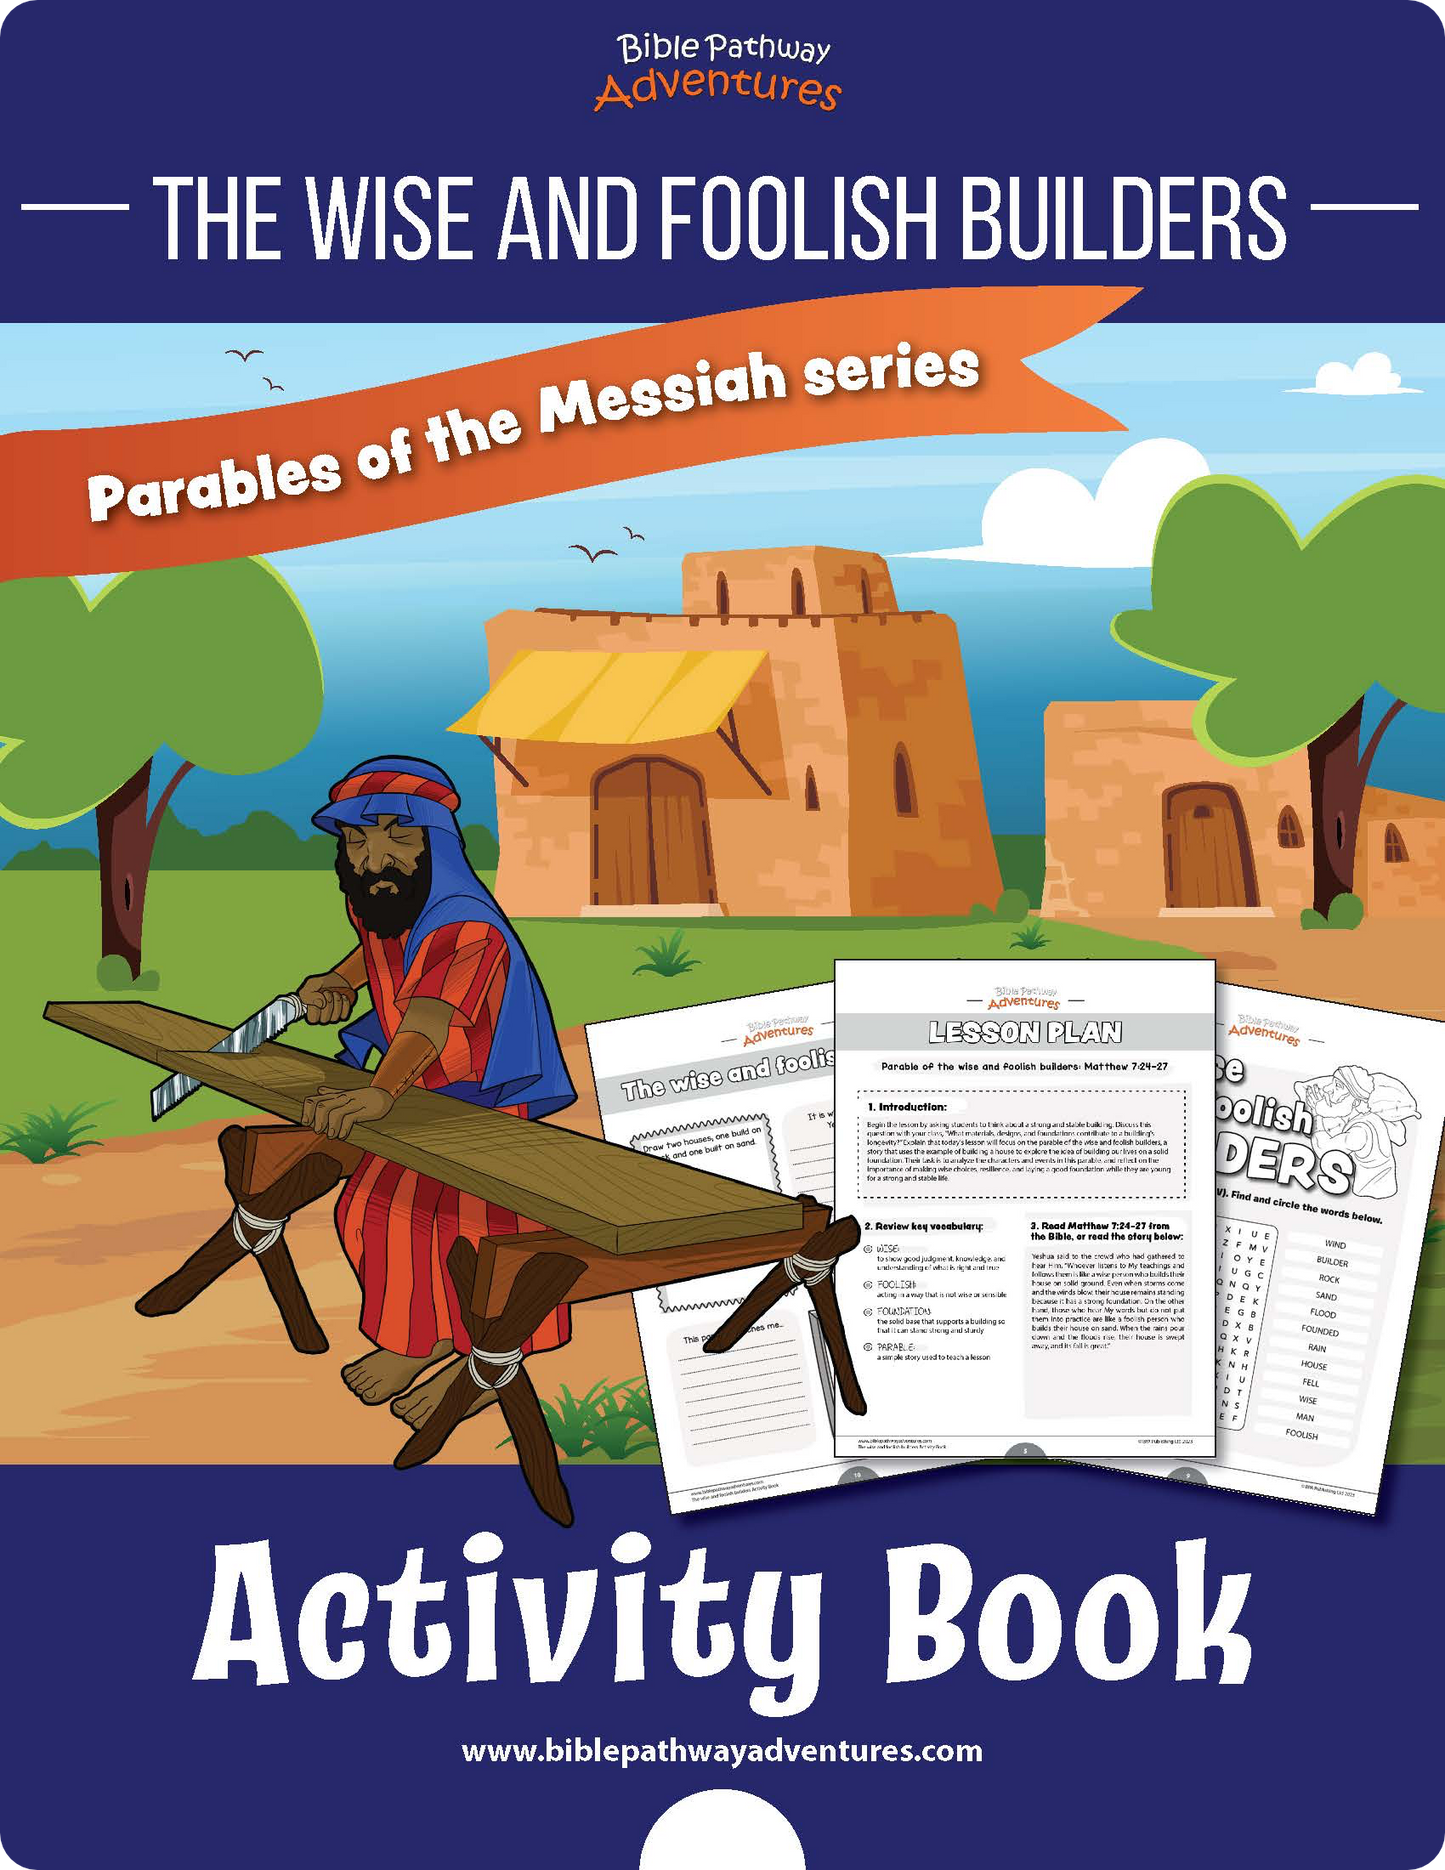 Libro de Actividades de la Parábola de los Constructores Sabios y Necios